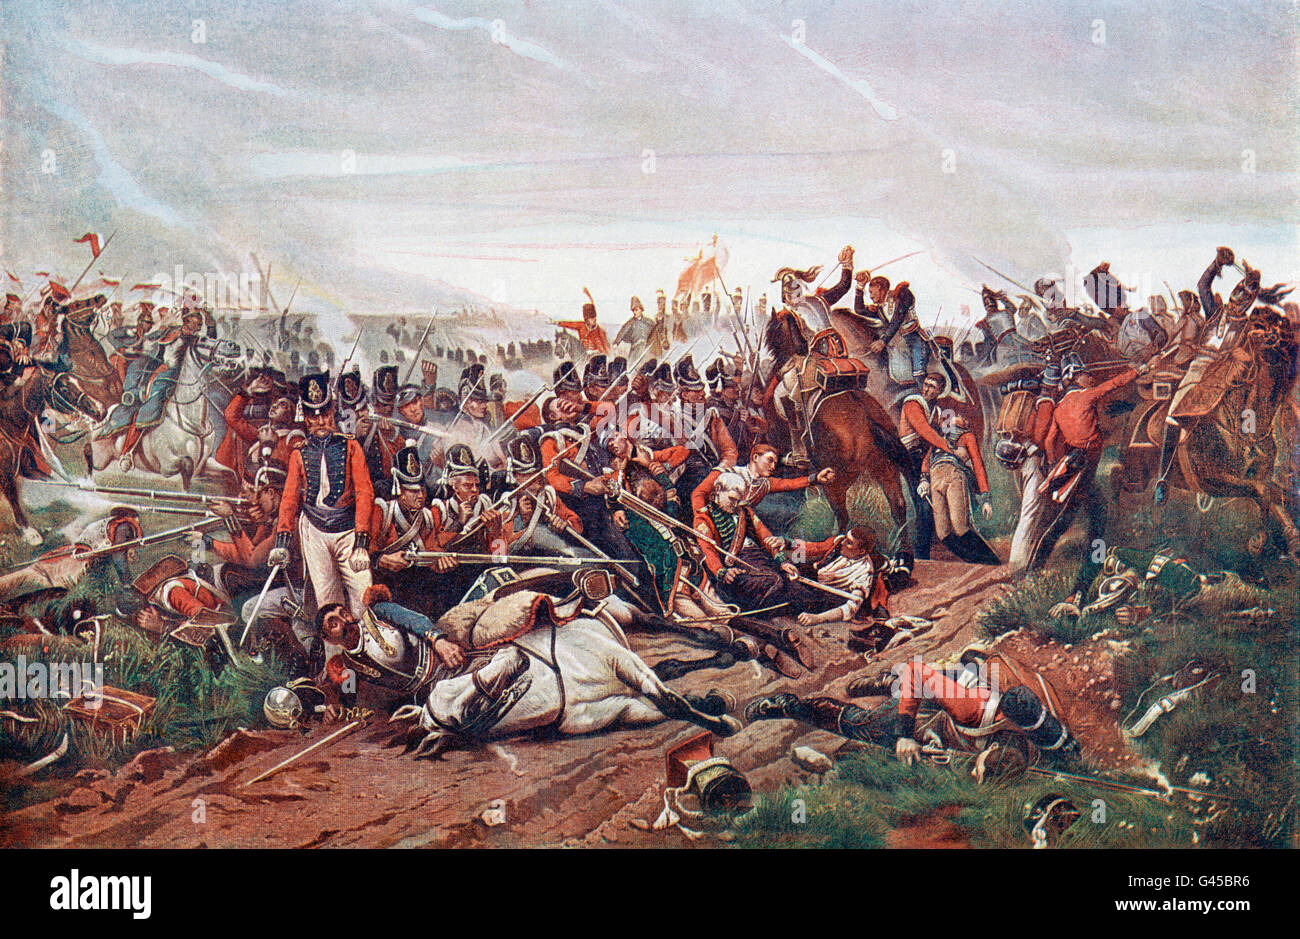 La bataille de Waterloo, Belgique, 18 juin 1815. Une charge de cuirassiers français place britannique. Après la peinture de Jazet. Du siècle, édition de Cassell's history of England, publié c. 1900 Banque D'Images